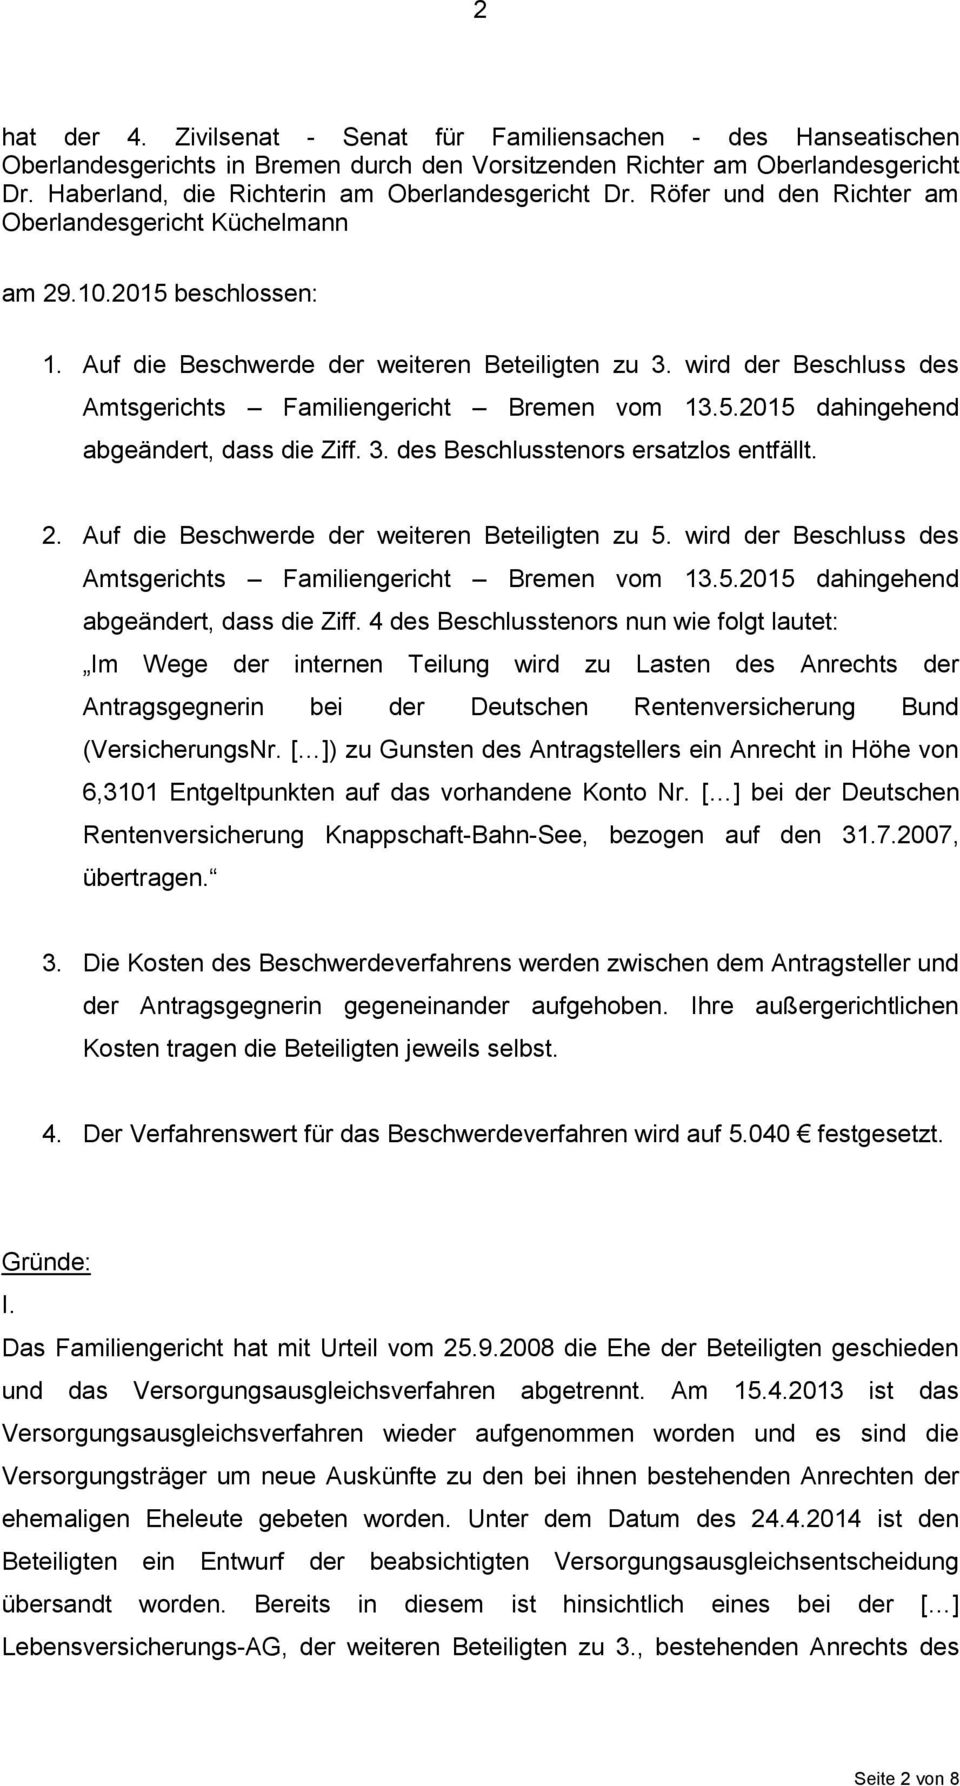 wird der Beschluss des Amtsgerichts Familiengericht Bremen vom 13.5.2015 dahingehend abgeändert, dass die Ziff. 3. des Beschlusstenors ersatzlos entfällt. 2.